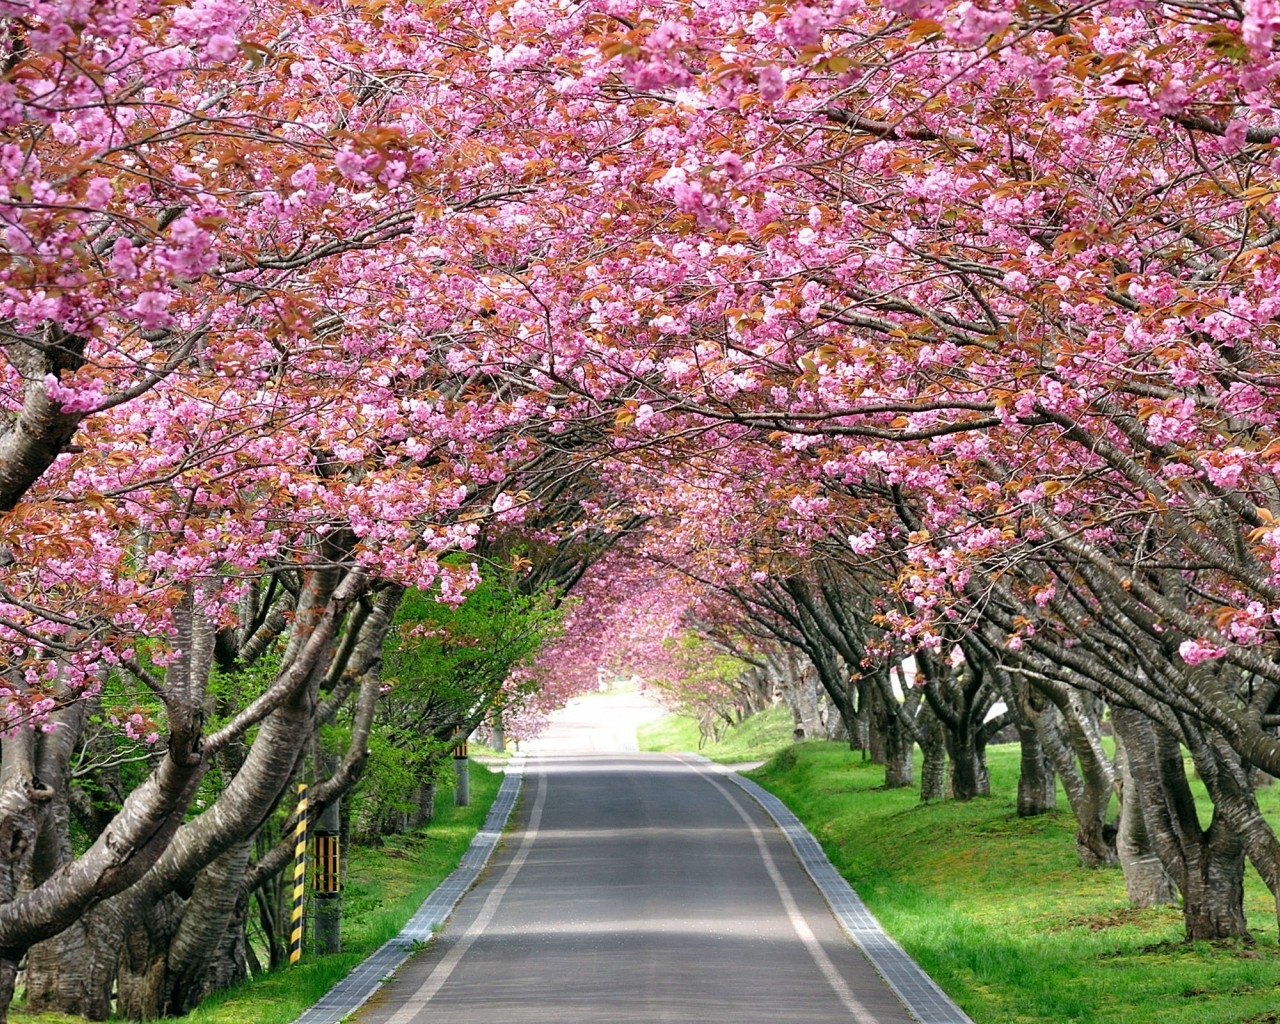 Splendid Cherry Blossom for 1280 x 1024 resolution